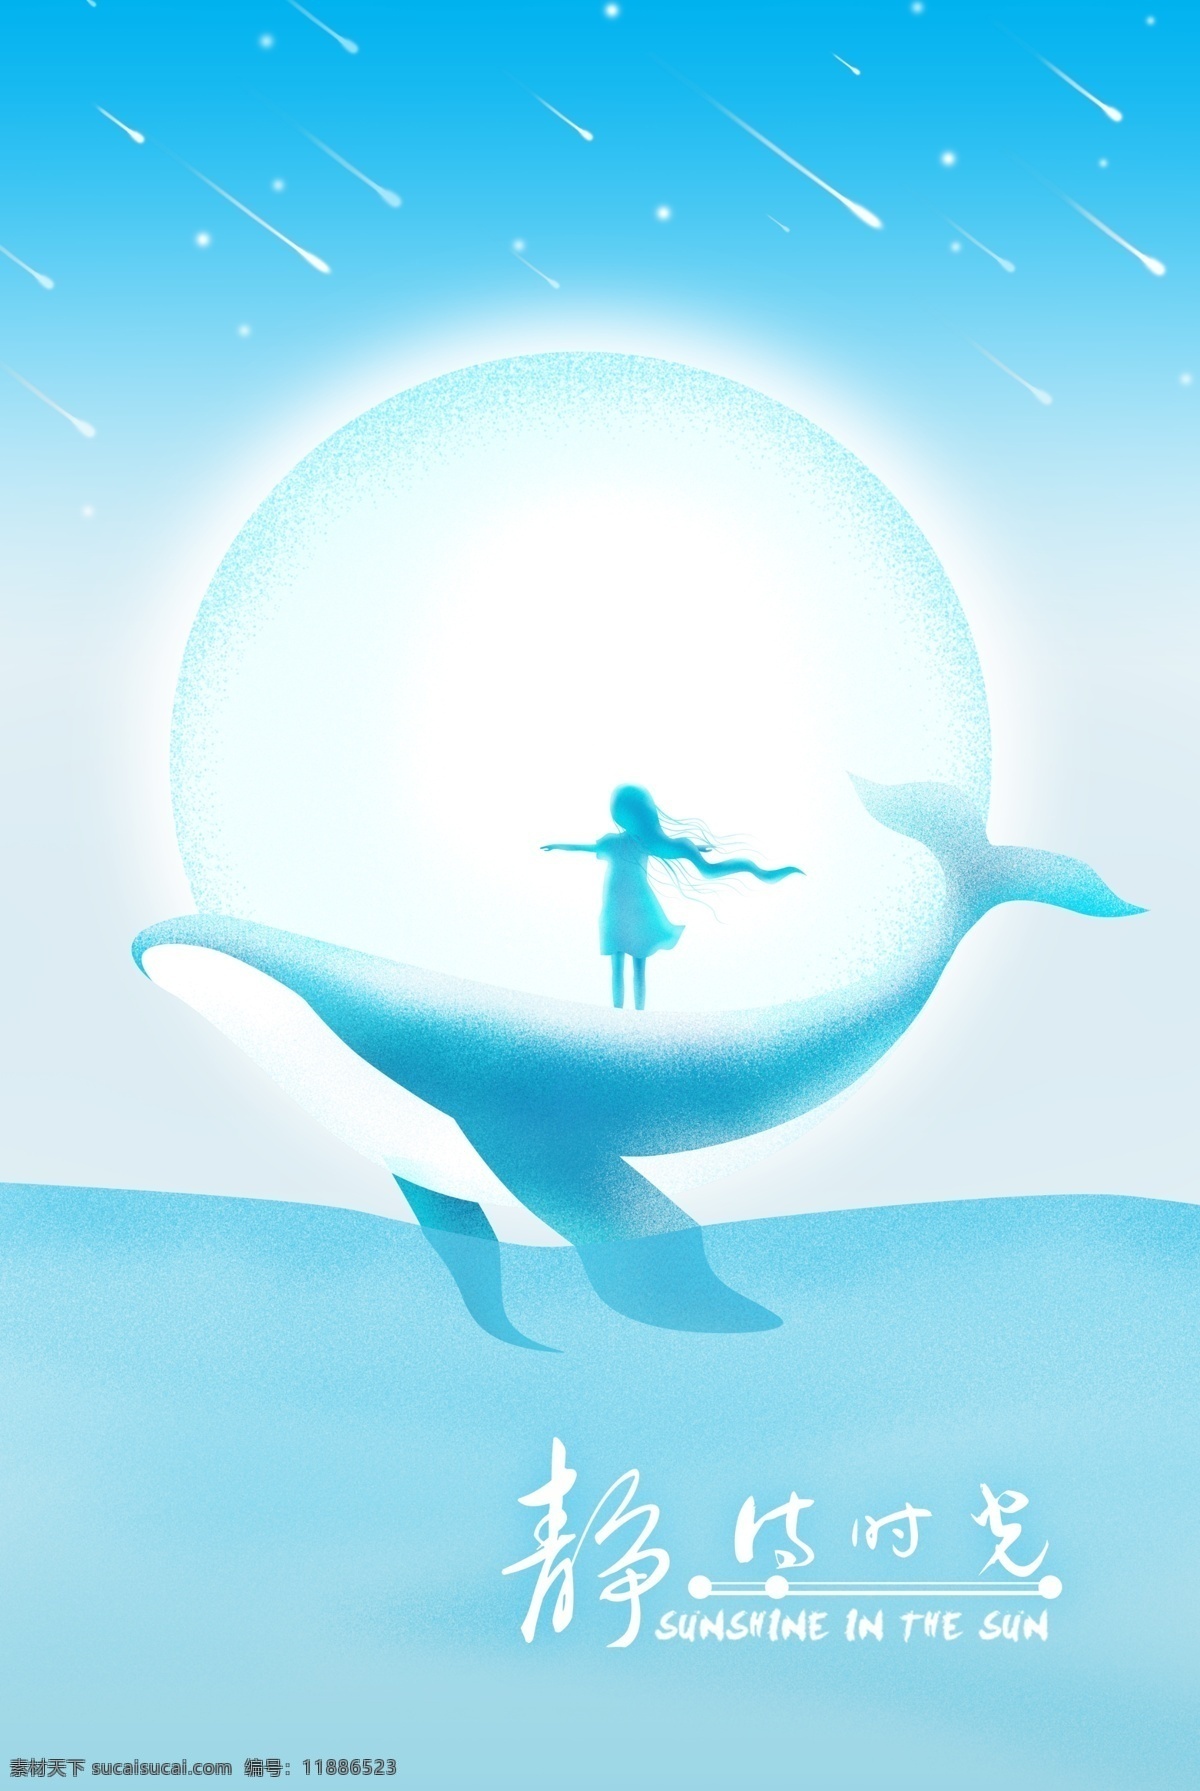 原创 插画 唯美 手绘 蓝色 海洋 鲸鱼 海报 淡蓝 淡雅 儿童 流星 女孩 轻松 人物